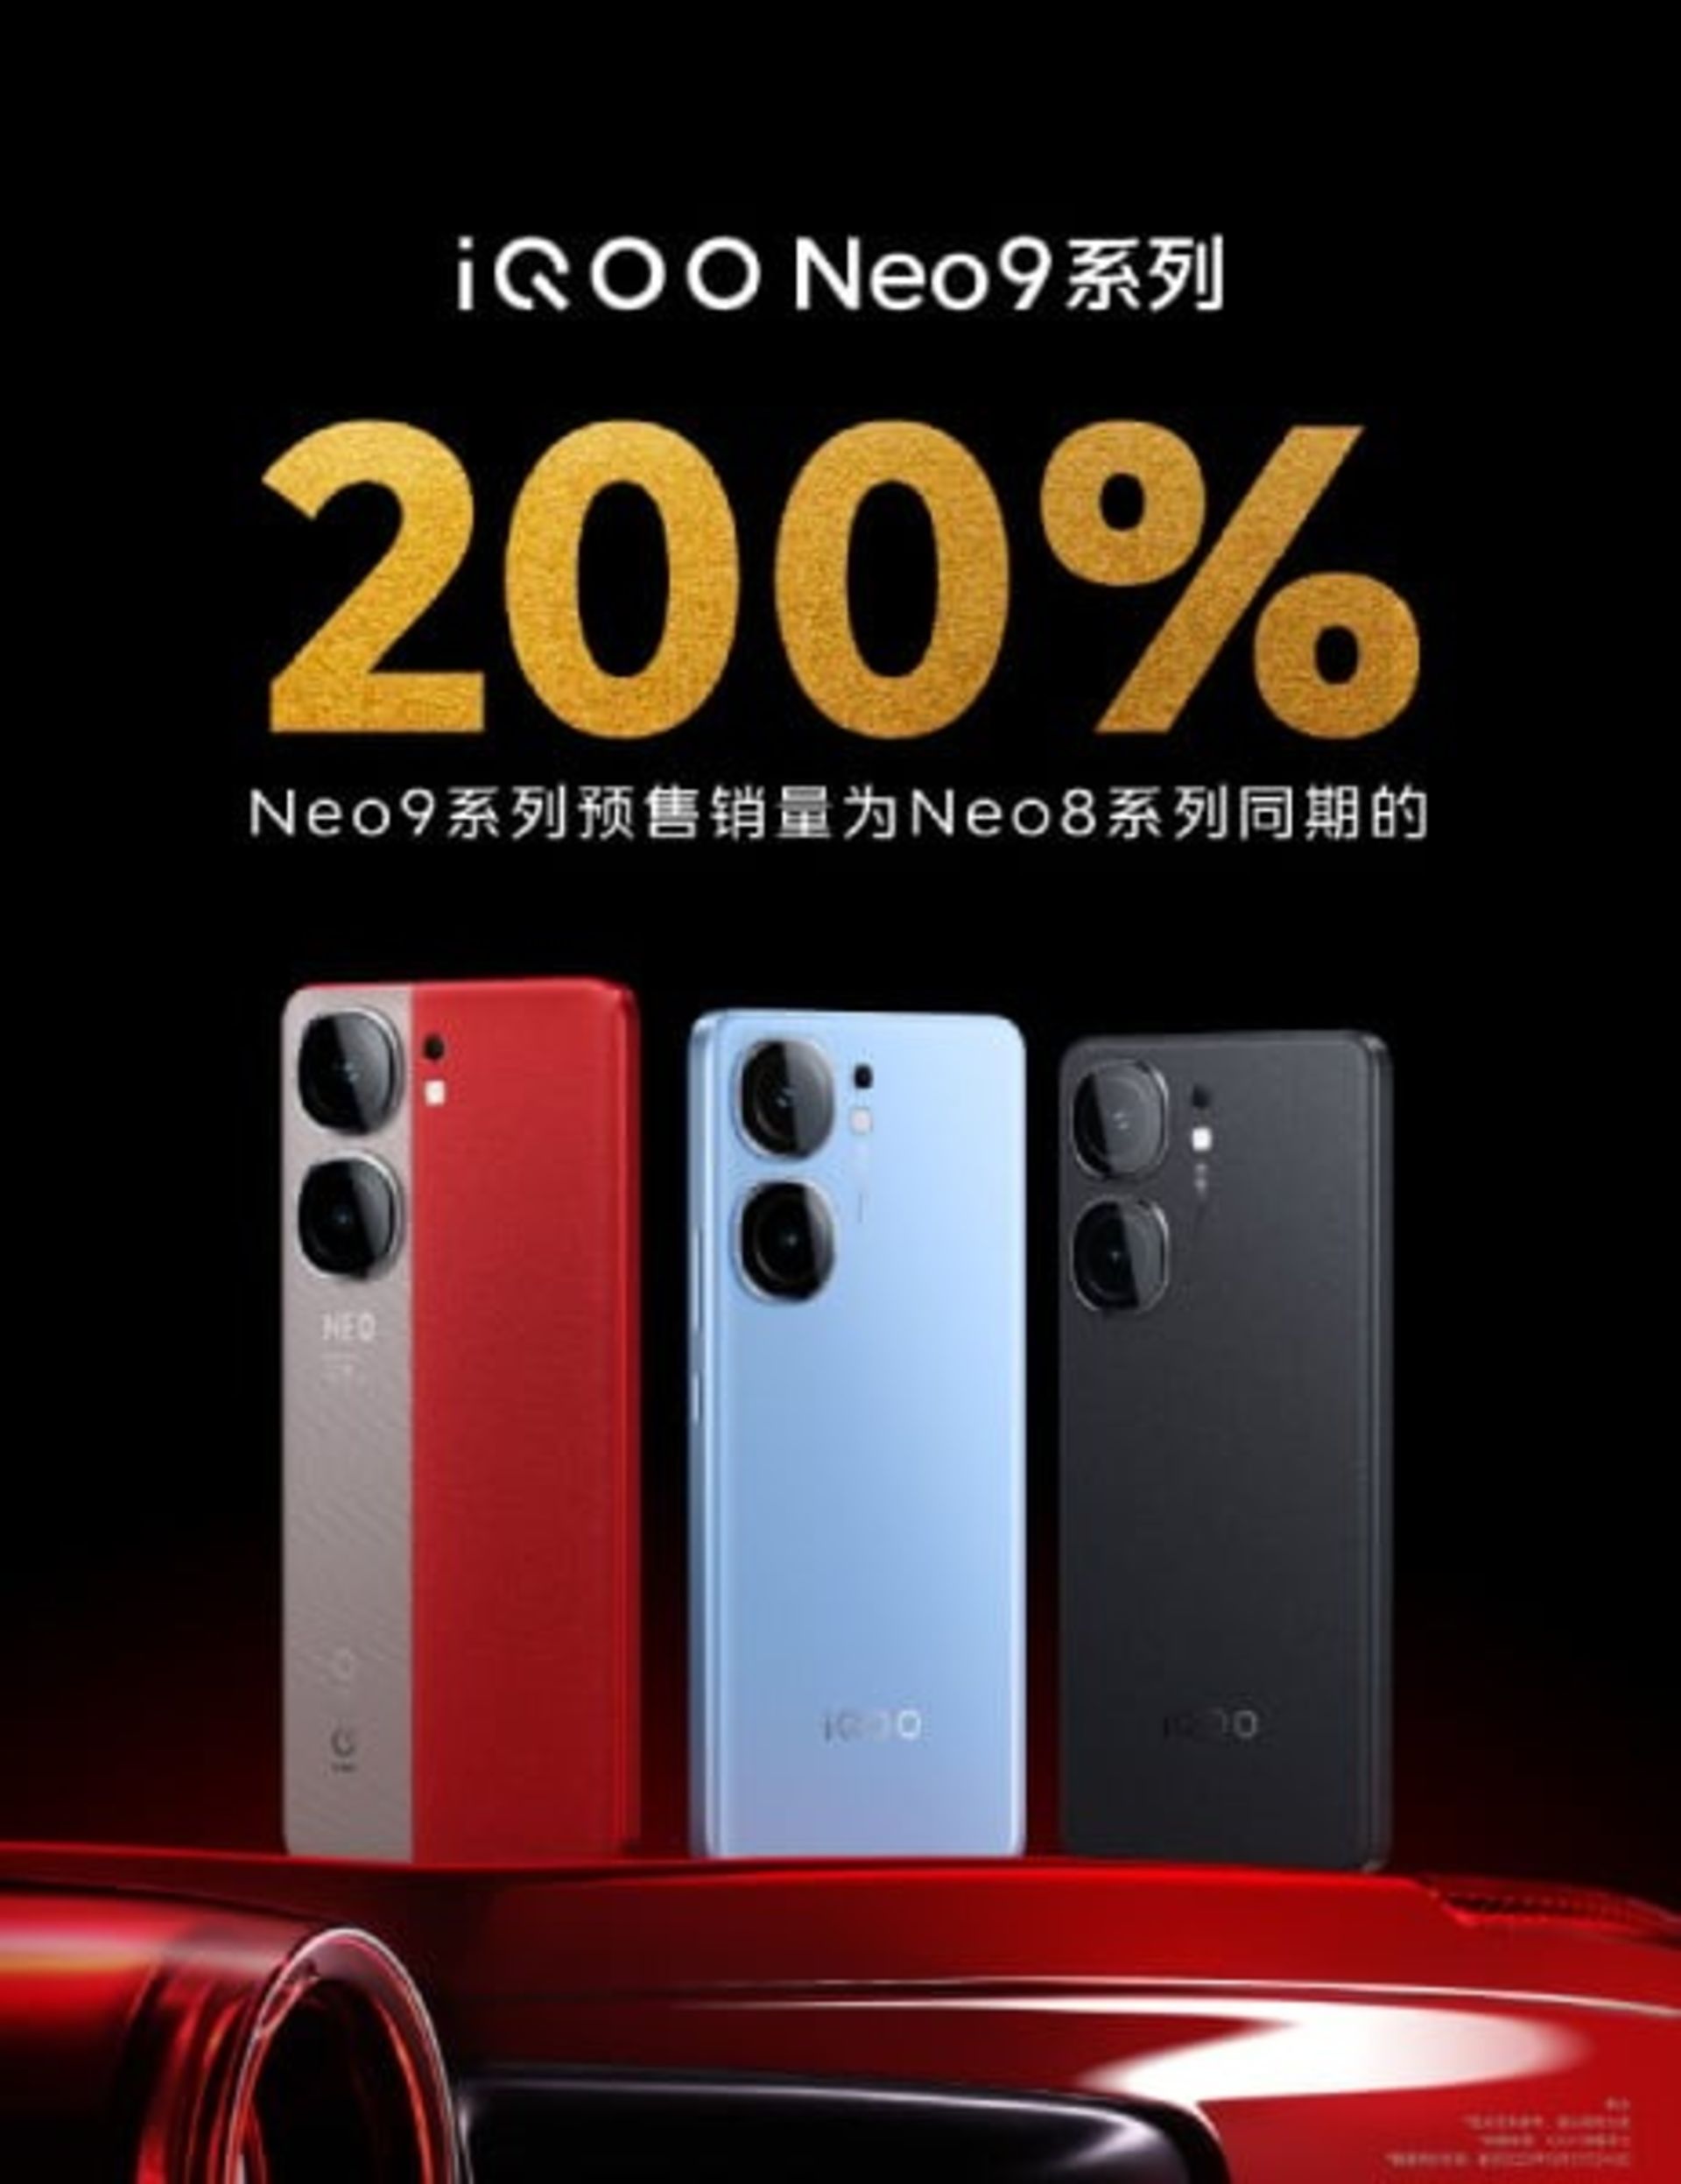 گوشی ویوو آیکو سری نئو ۹ در سه رنگ با رشد پیش فروش ۲۰۰ درصد بیشتر از سری ۸